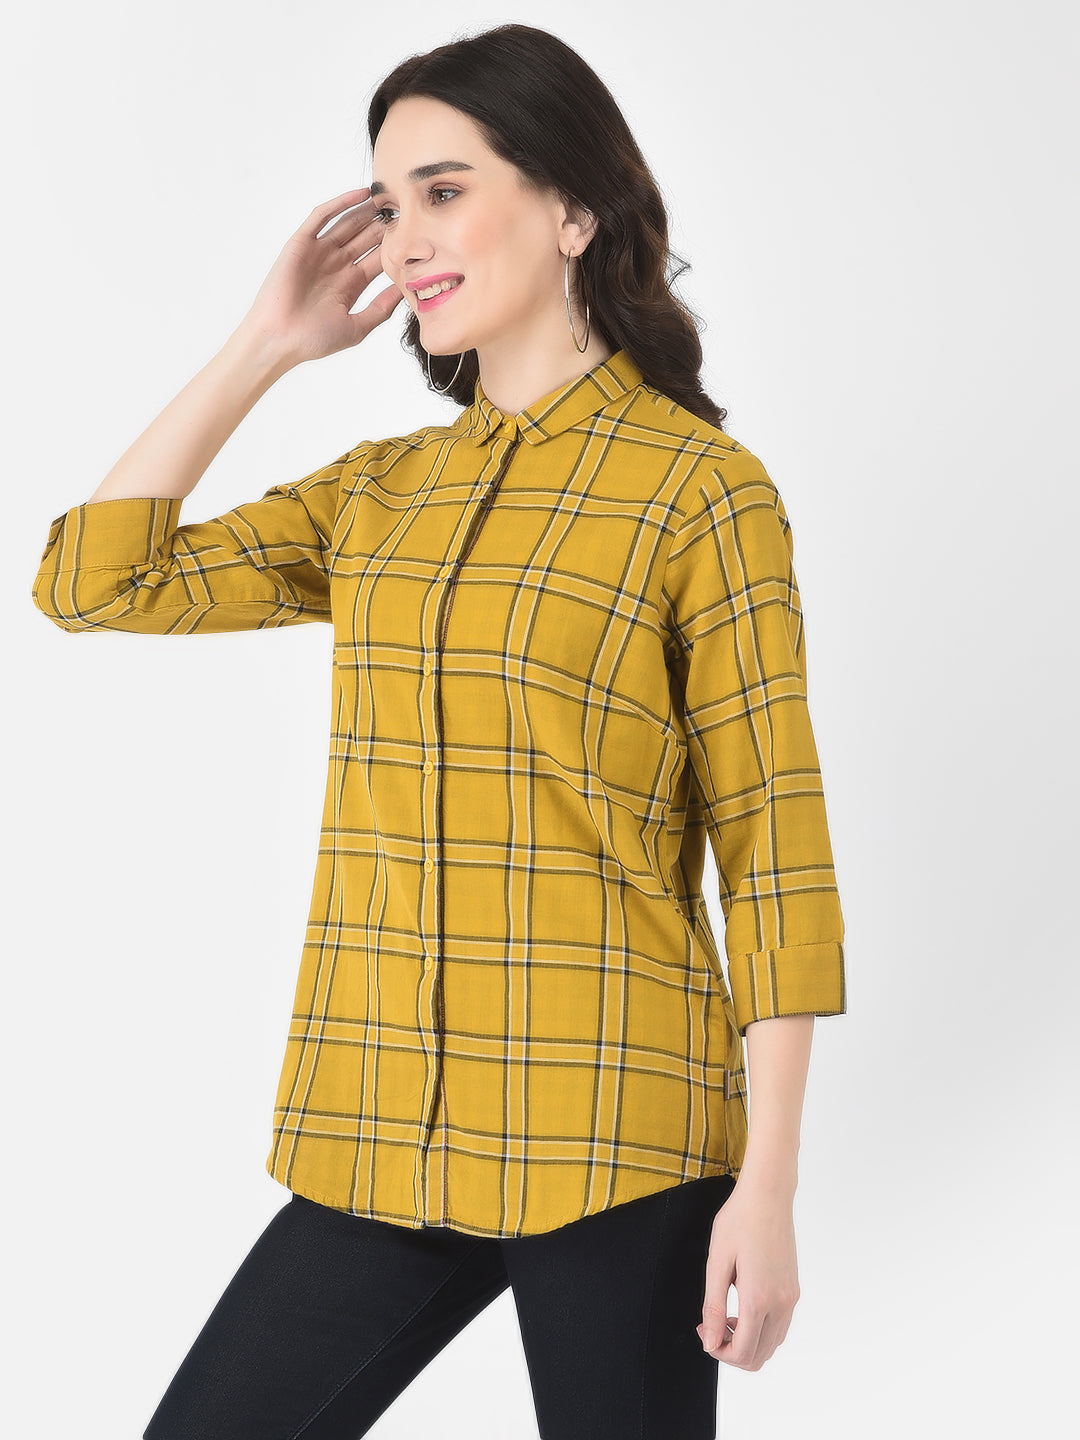 Mustard Yellow Windowpane Checked Shirt - Women Shirts